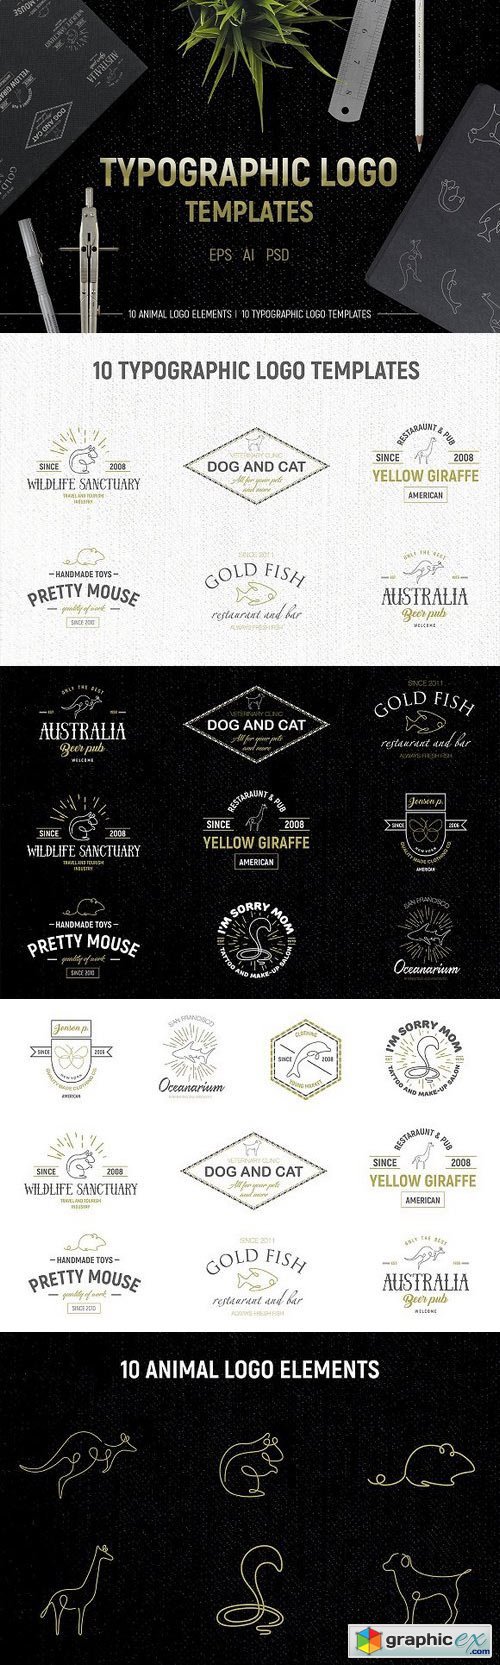 Typographic logo templates